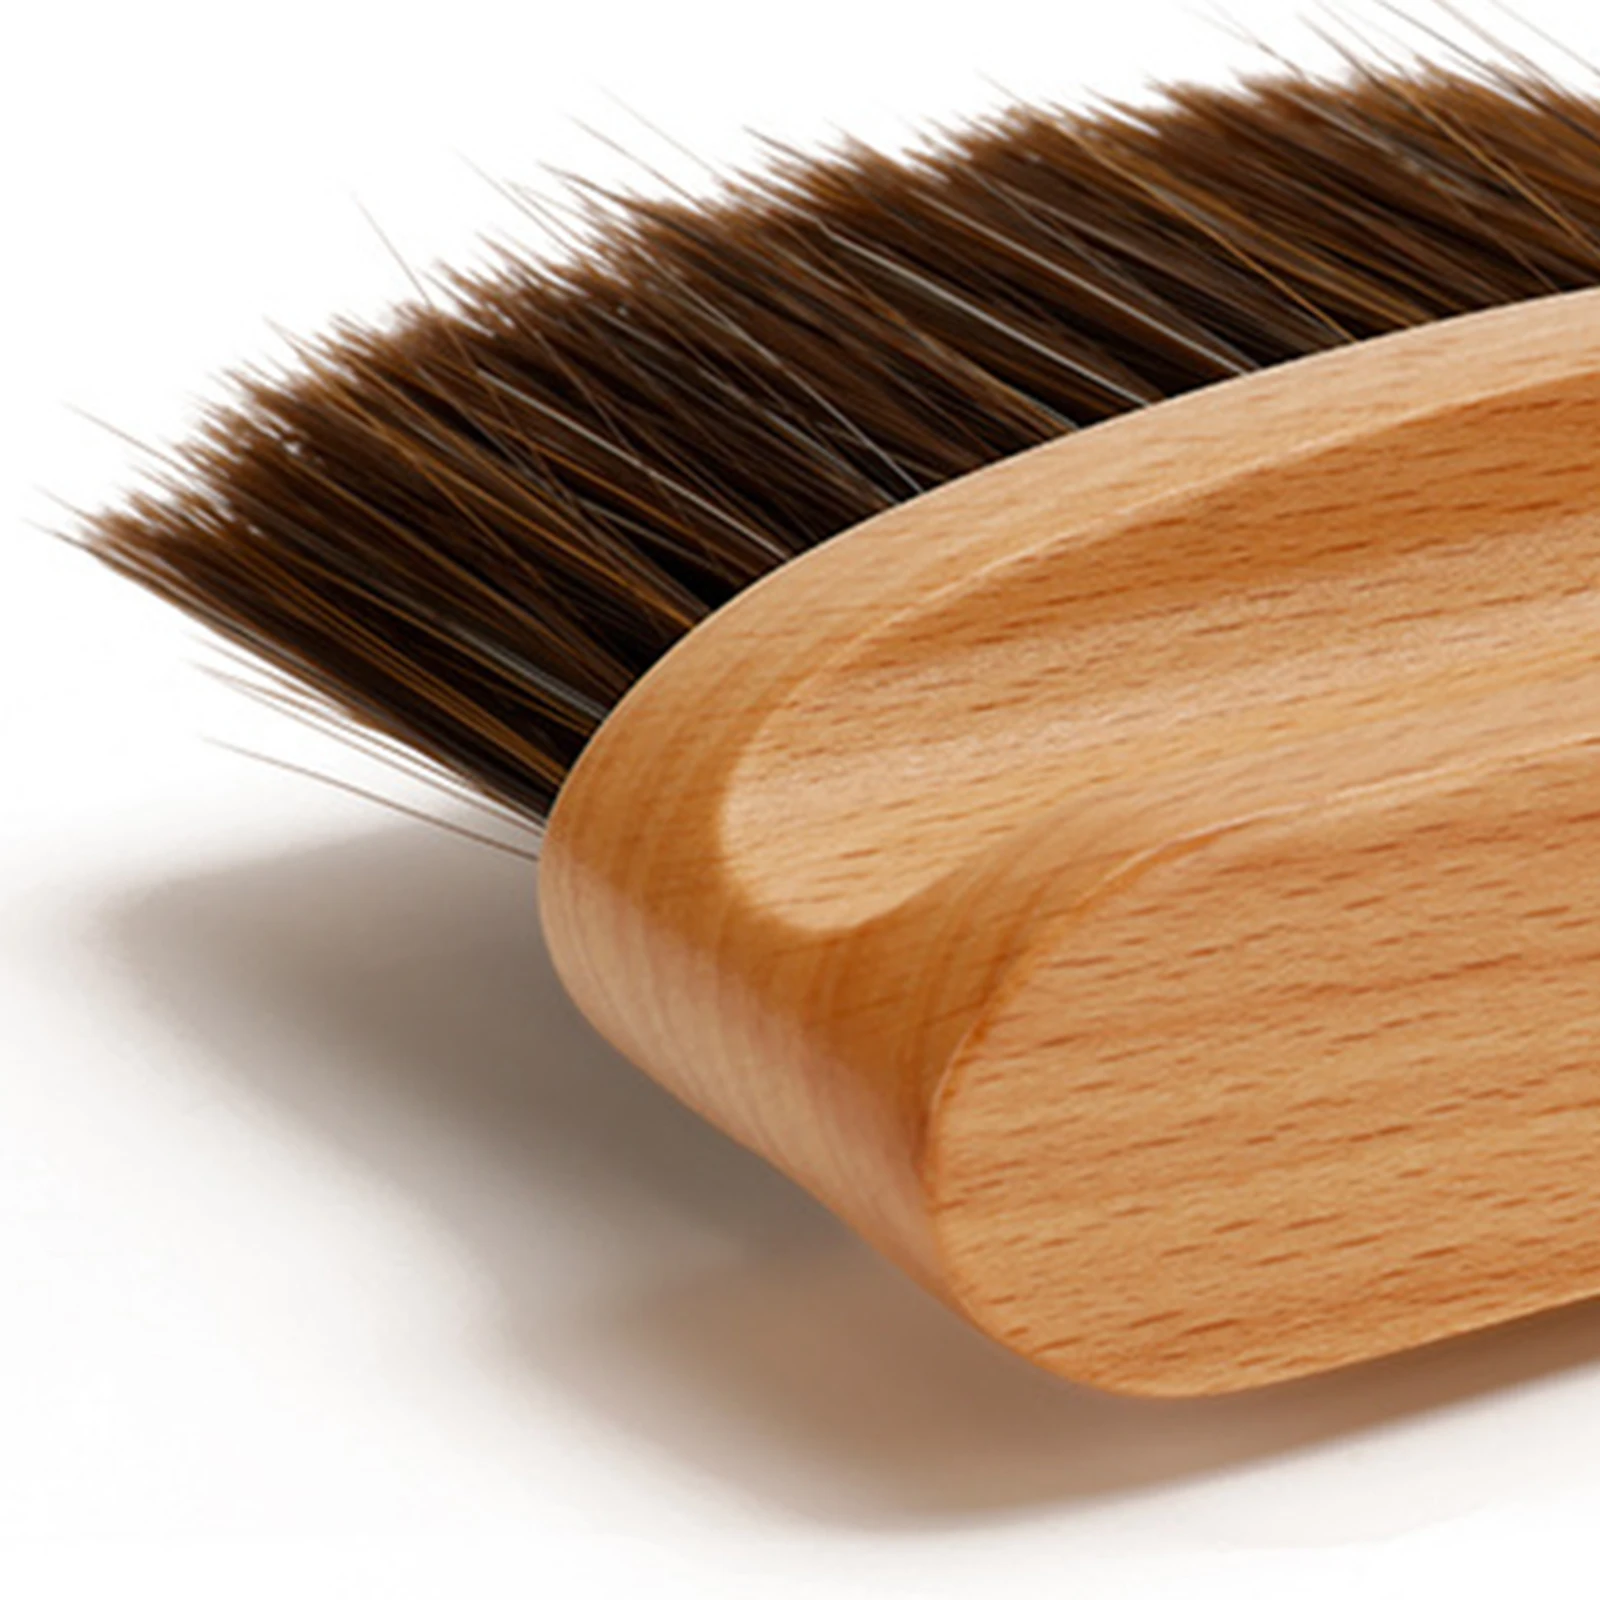 Neck Duster Brush Neck Brush Set Comfortable Water Resistant for Household Hair Duster Brush Cleaning Brush Soft Bristle